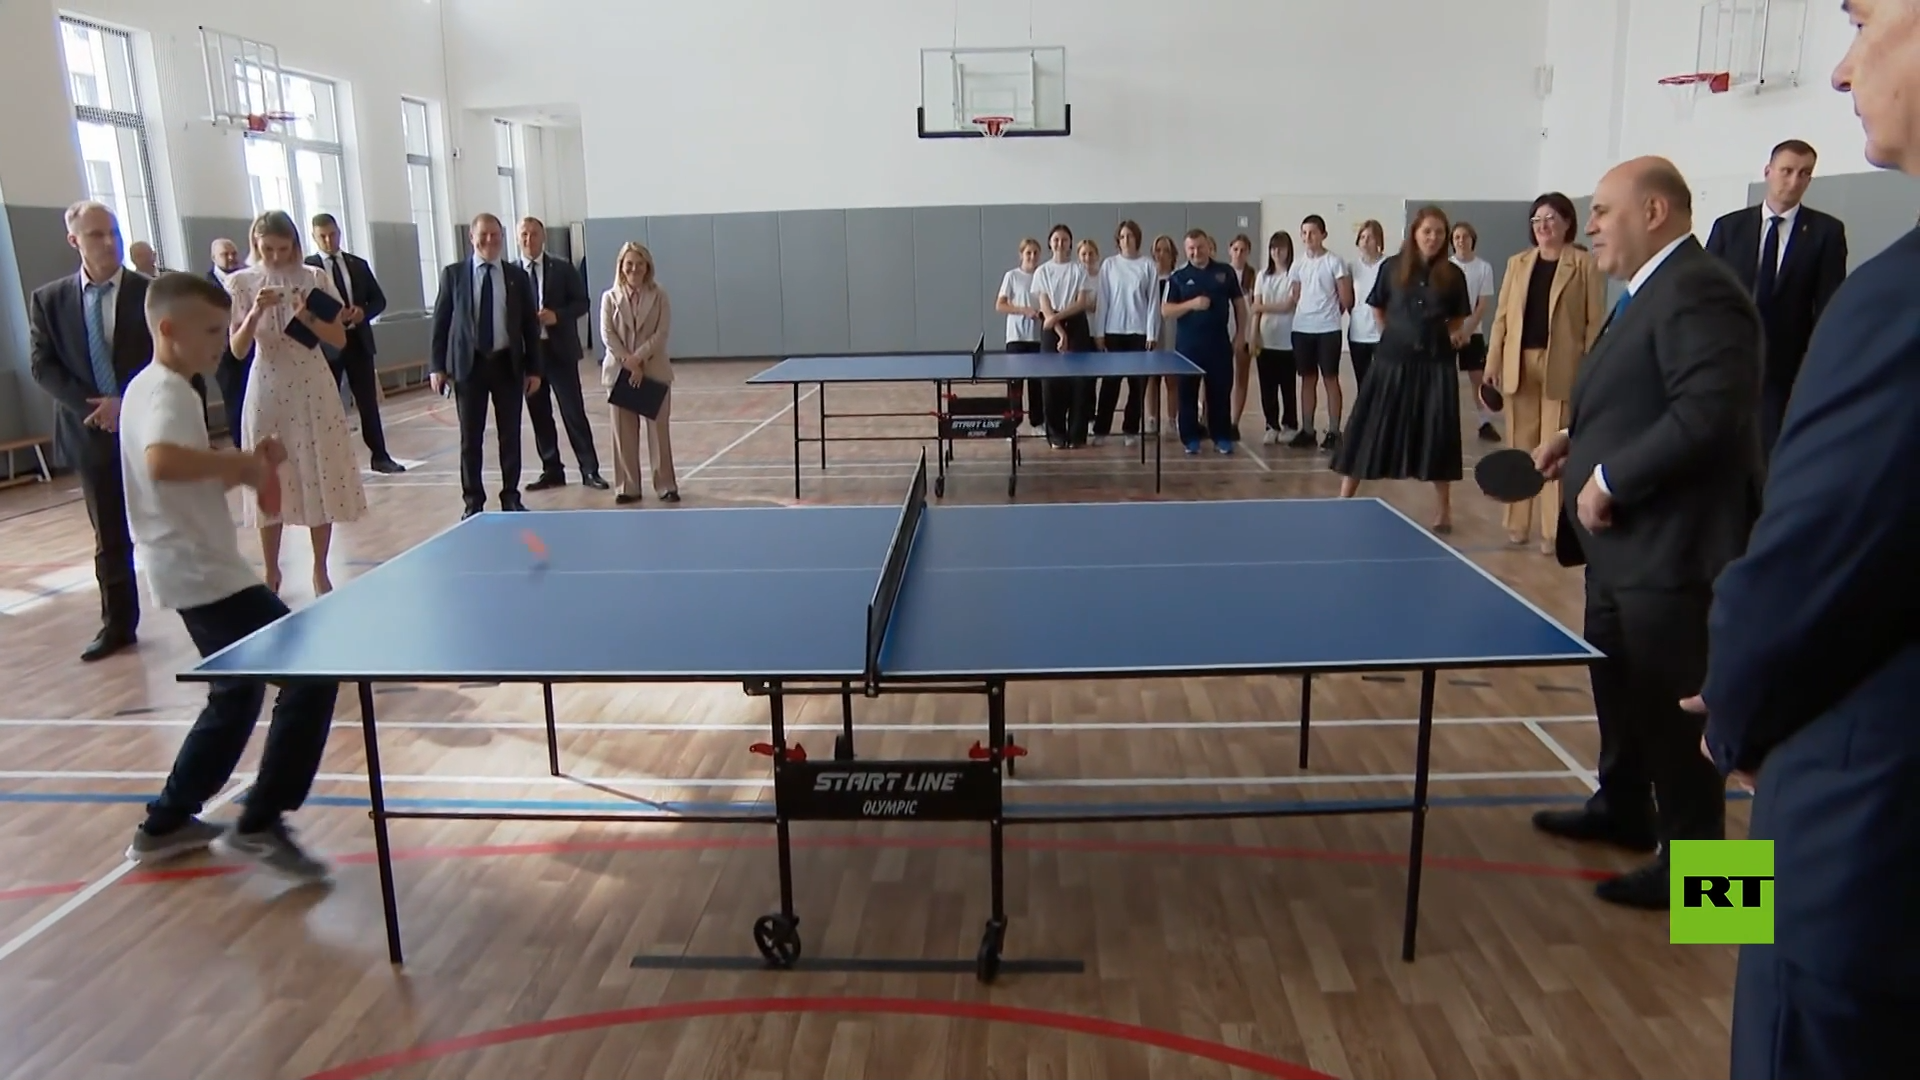 رئيس الوزراء الروسي يلعب كرة الطاولة مع تلميذ في إحدى المدارس بموسكو